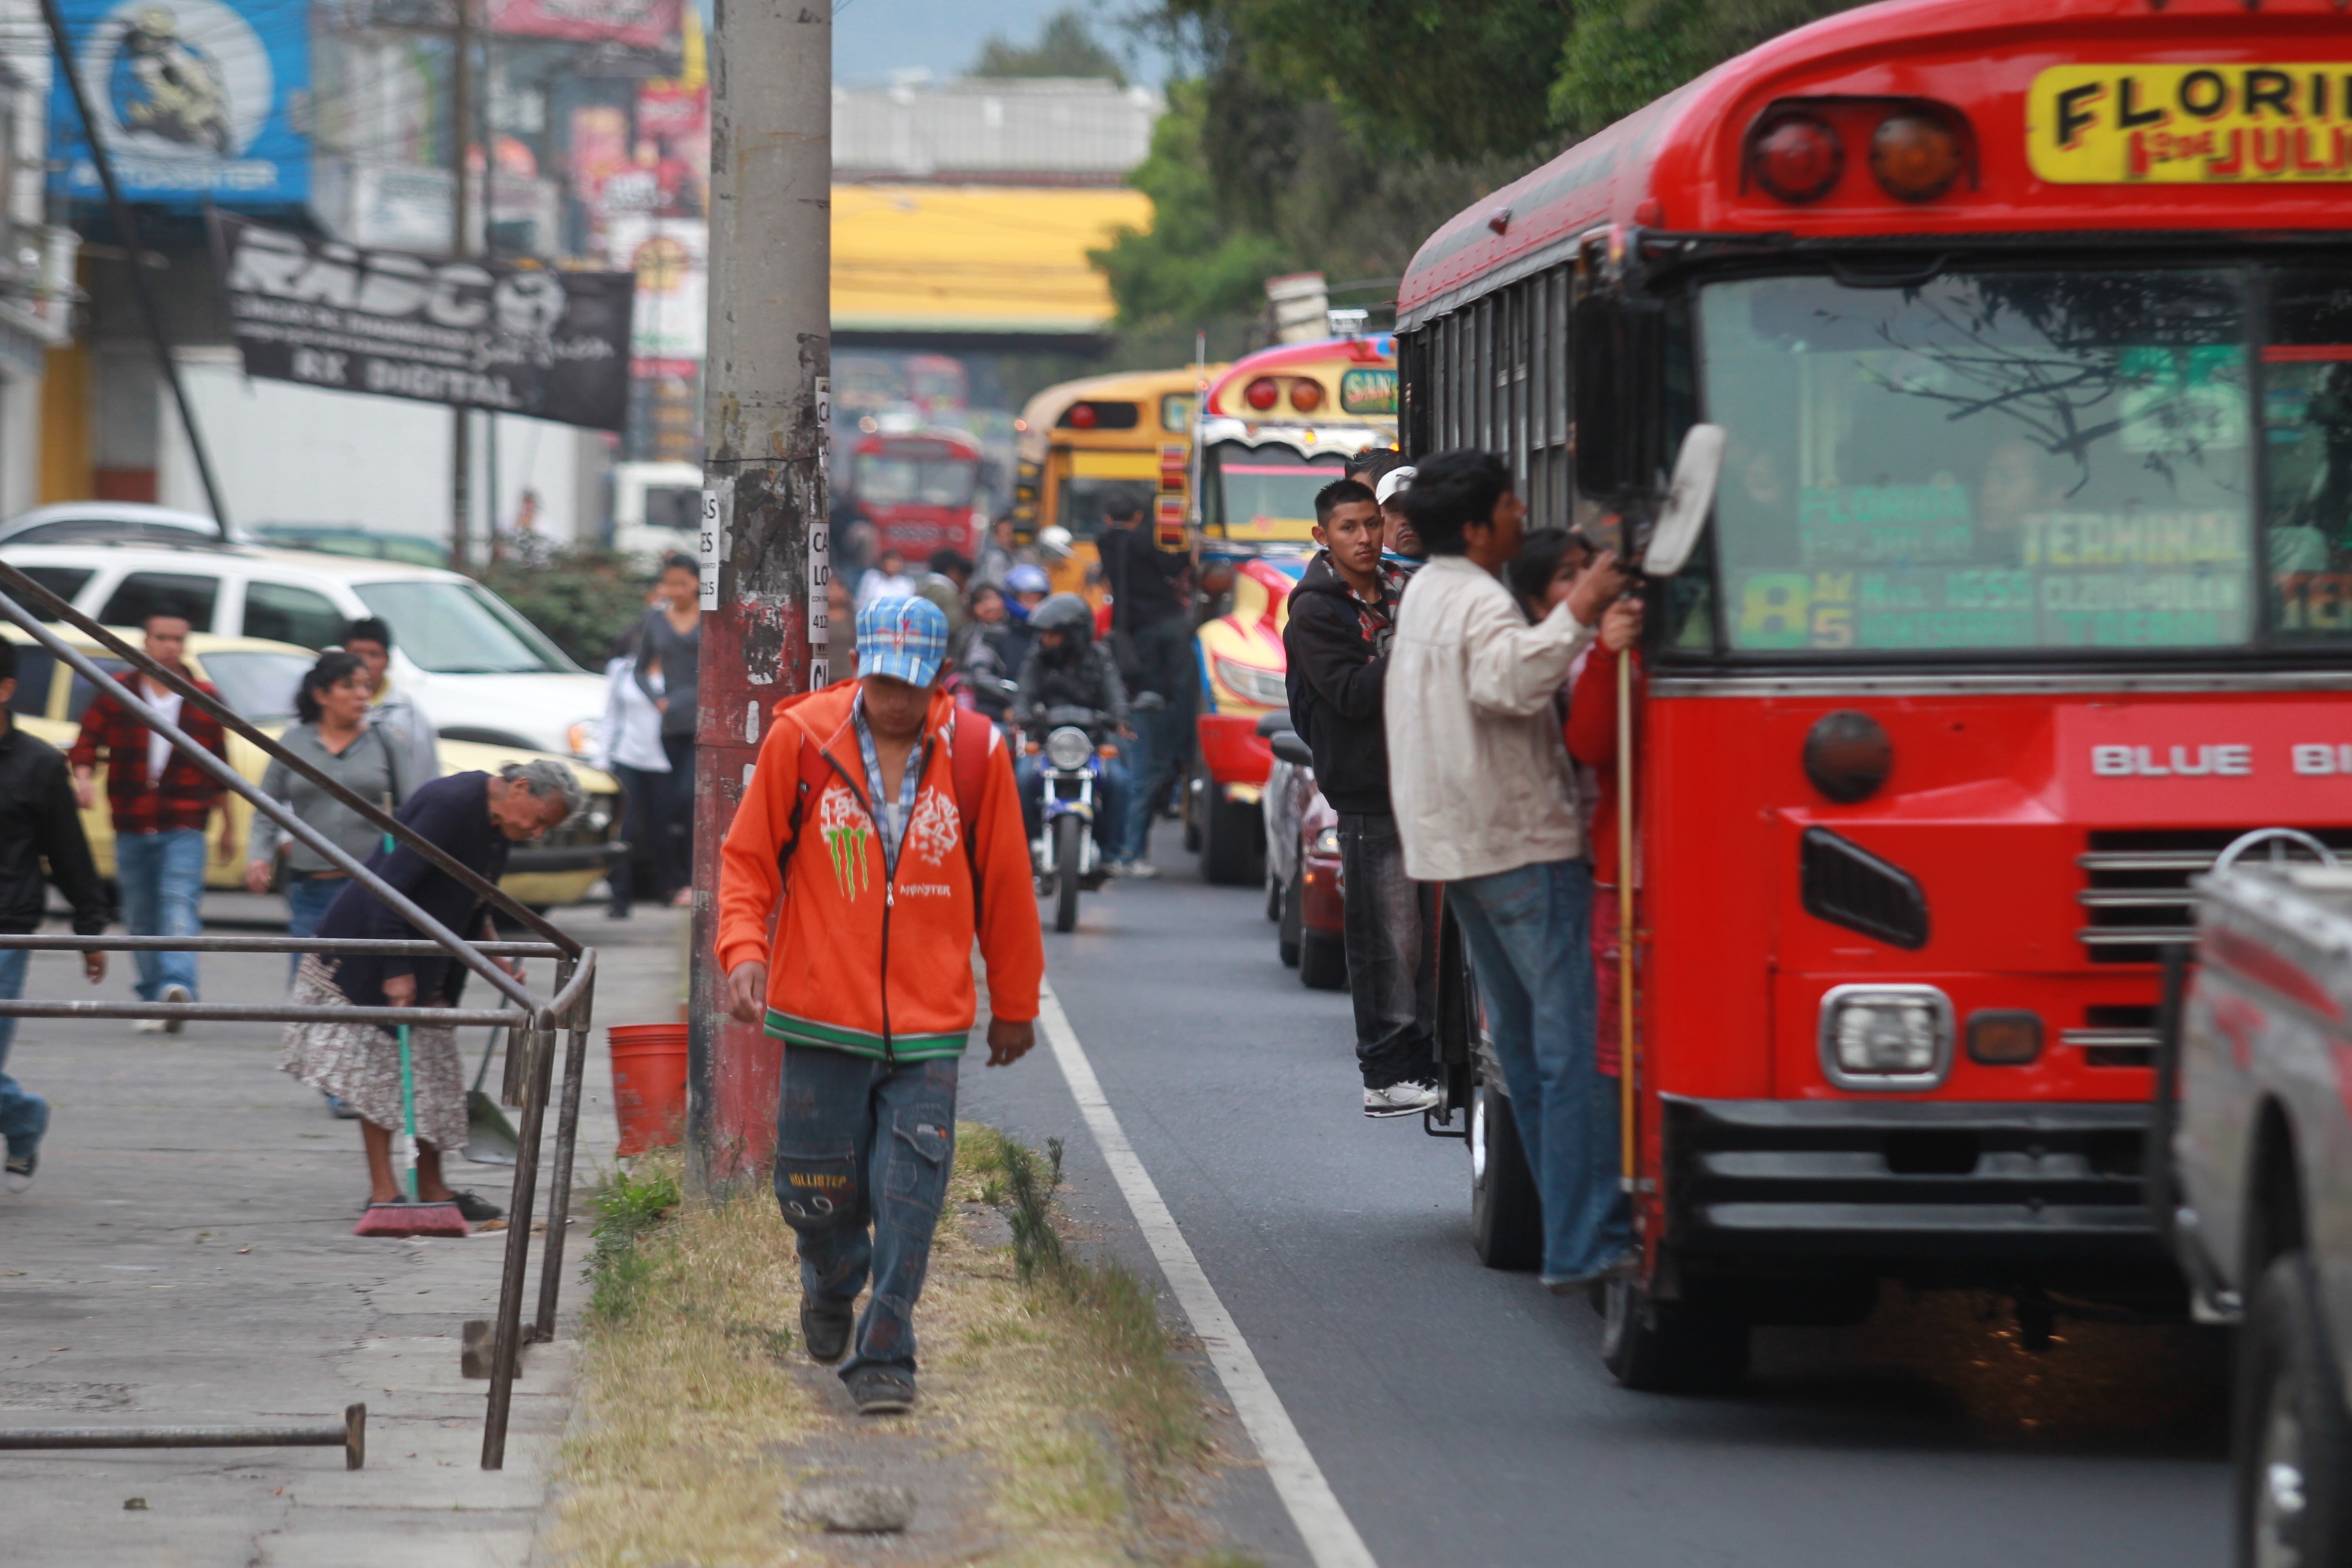 Los capitalinos aún demandan un mejor transporte público, según la encuesta. (Prensa Libre: Hemeroteca PL)